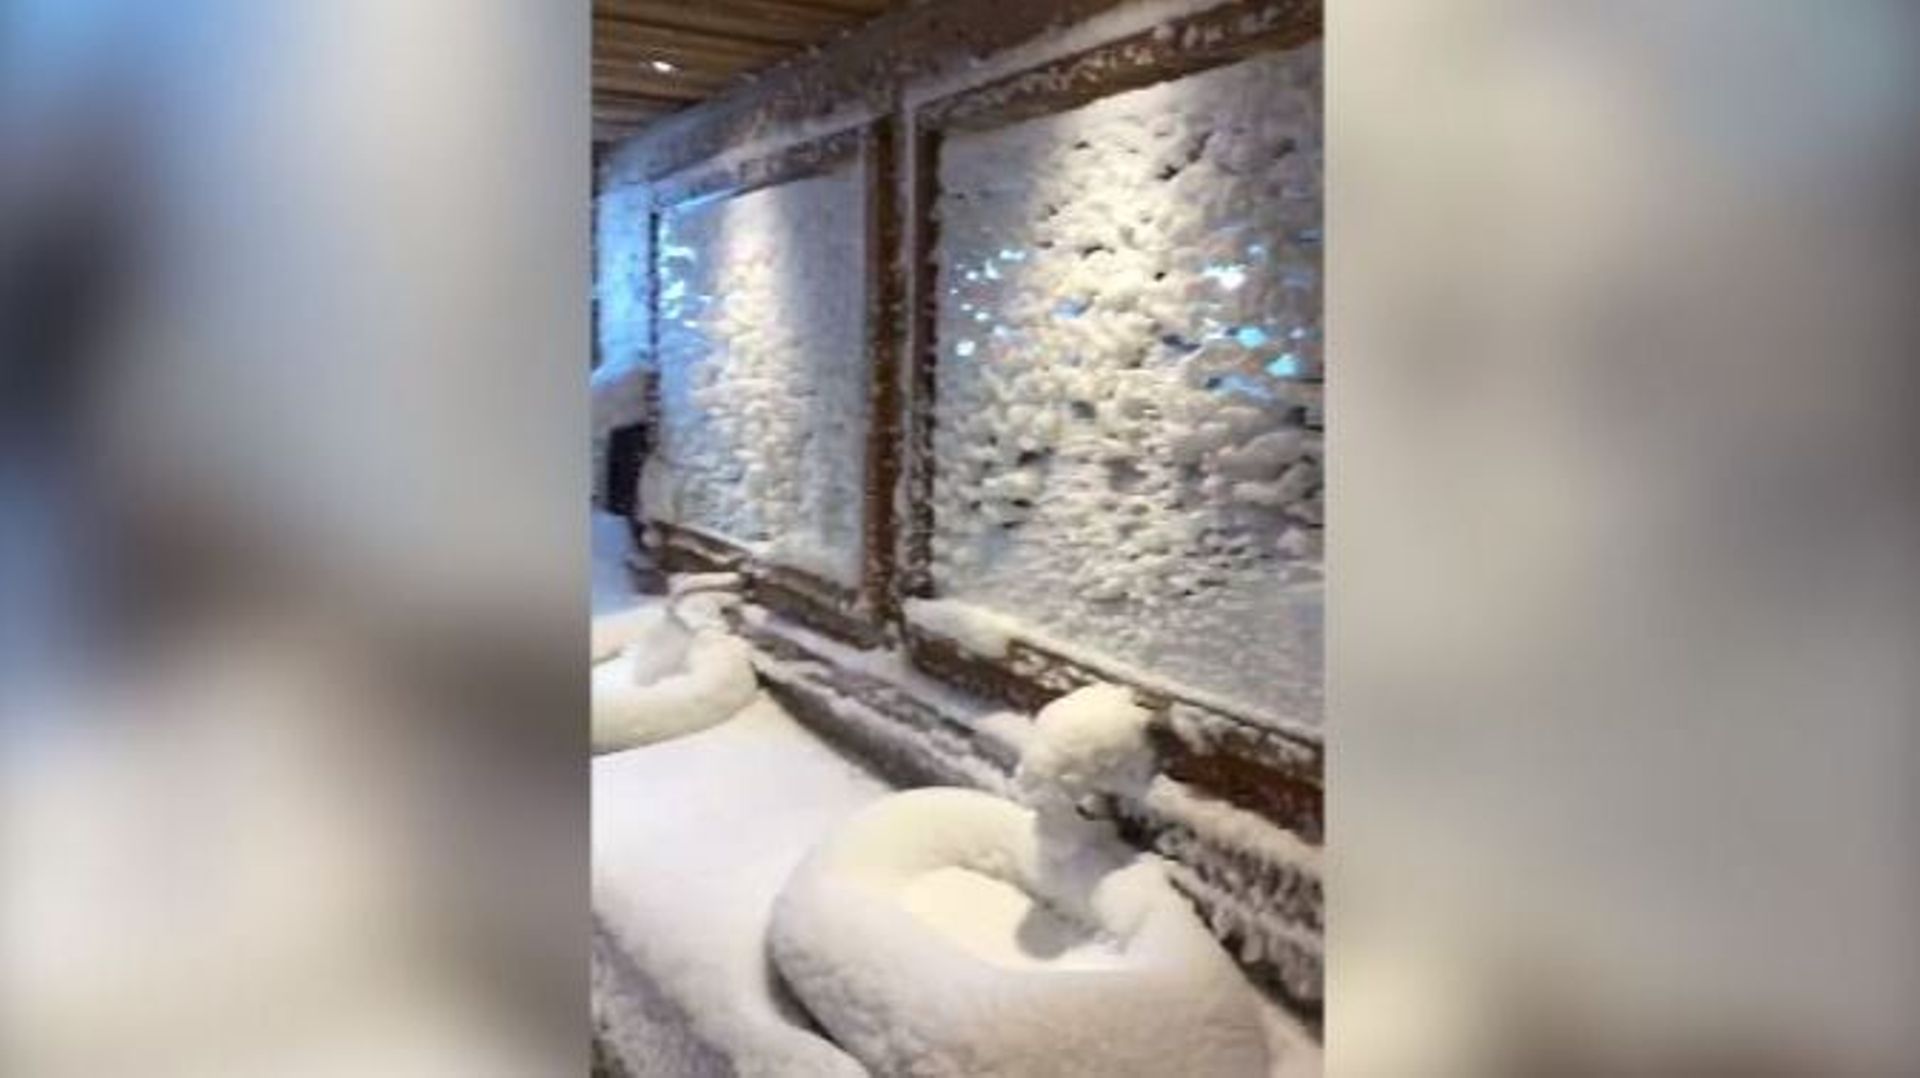 A Tignes, le restaurant "Le Panoramic" a oublié de fermer une fenêtre pendant une tempête de neige...